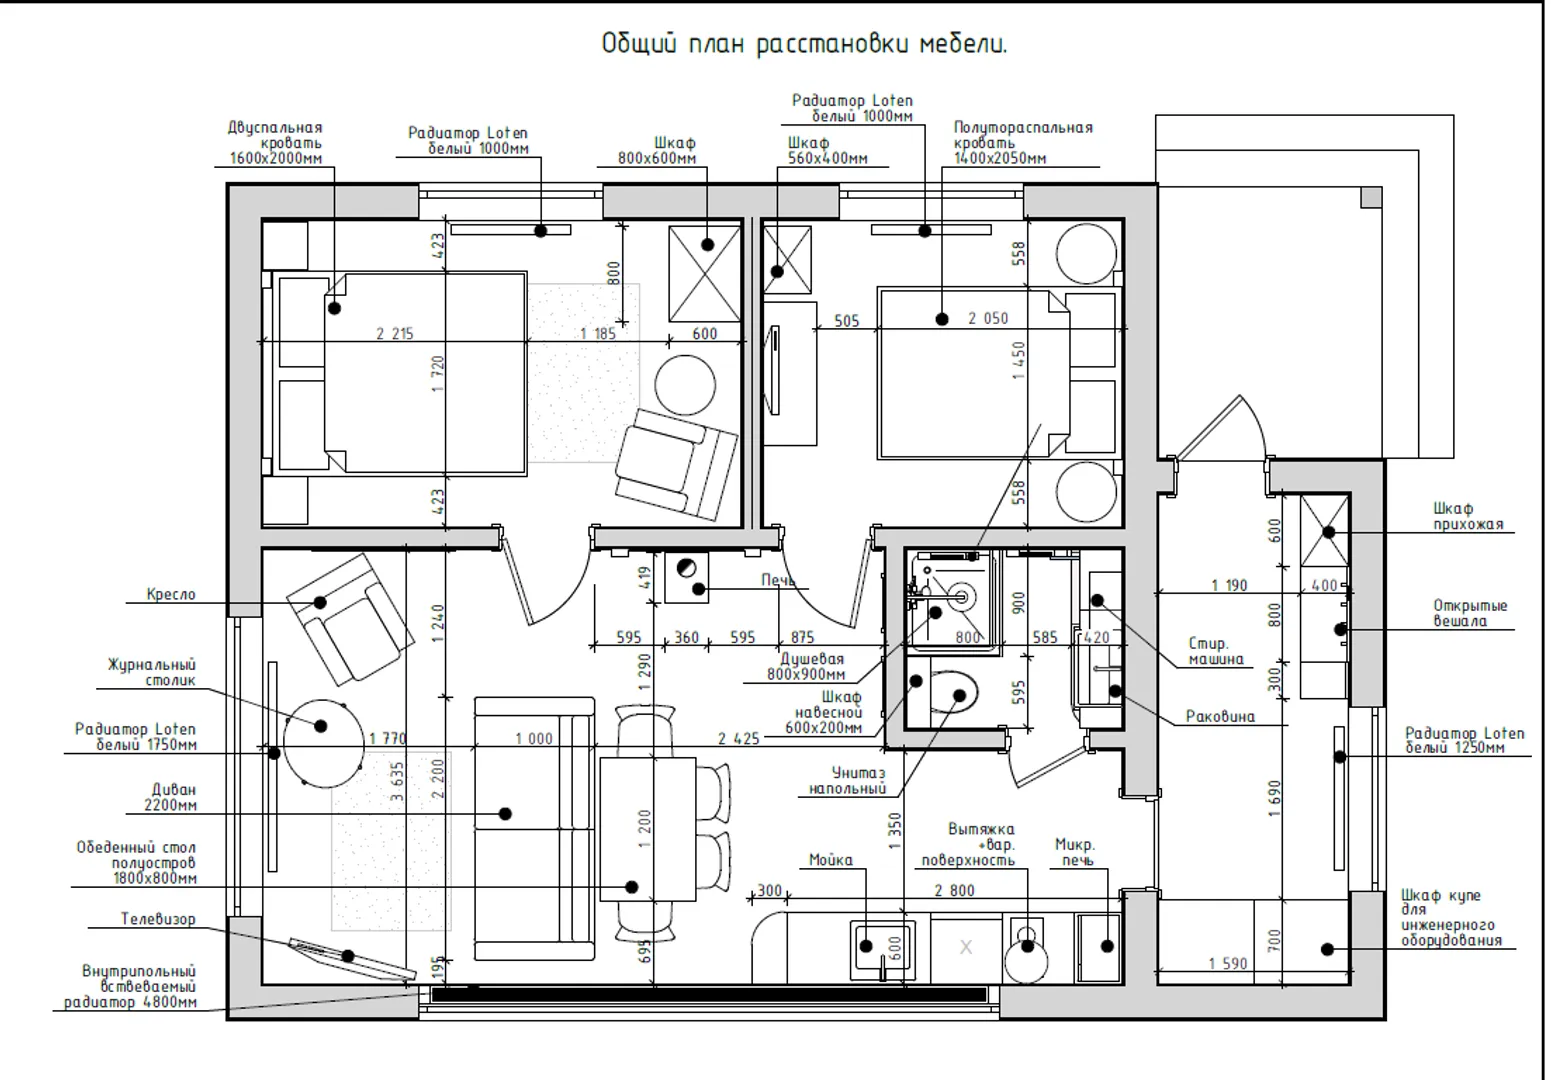 Схема помещений, мебели и оборудования